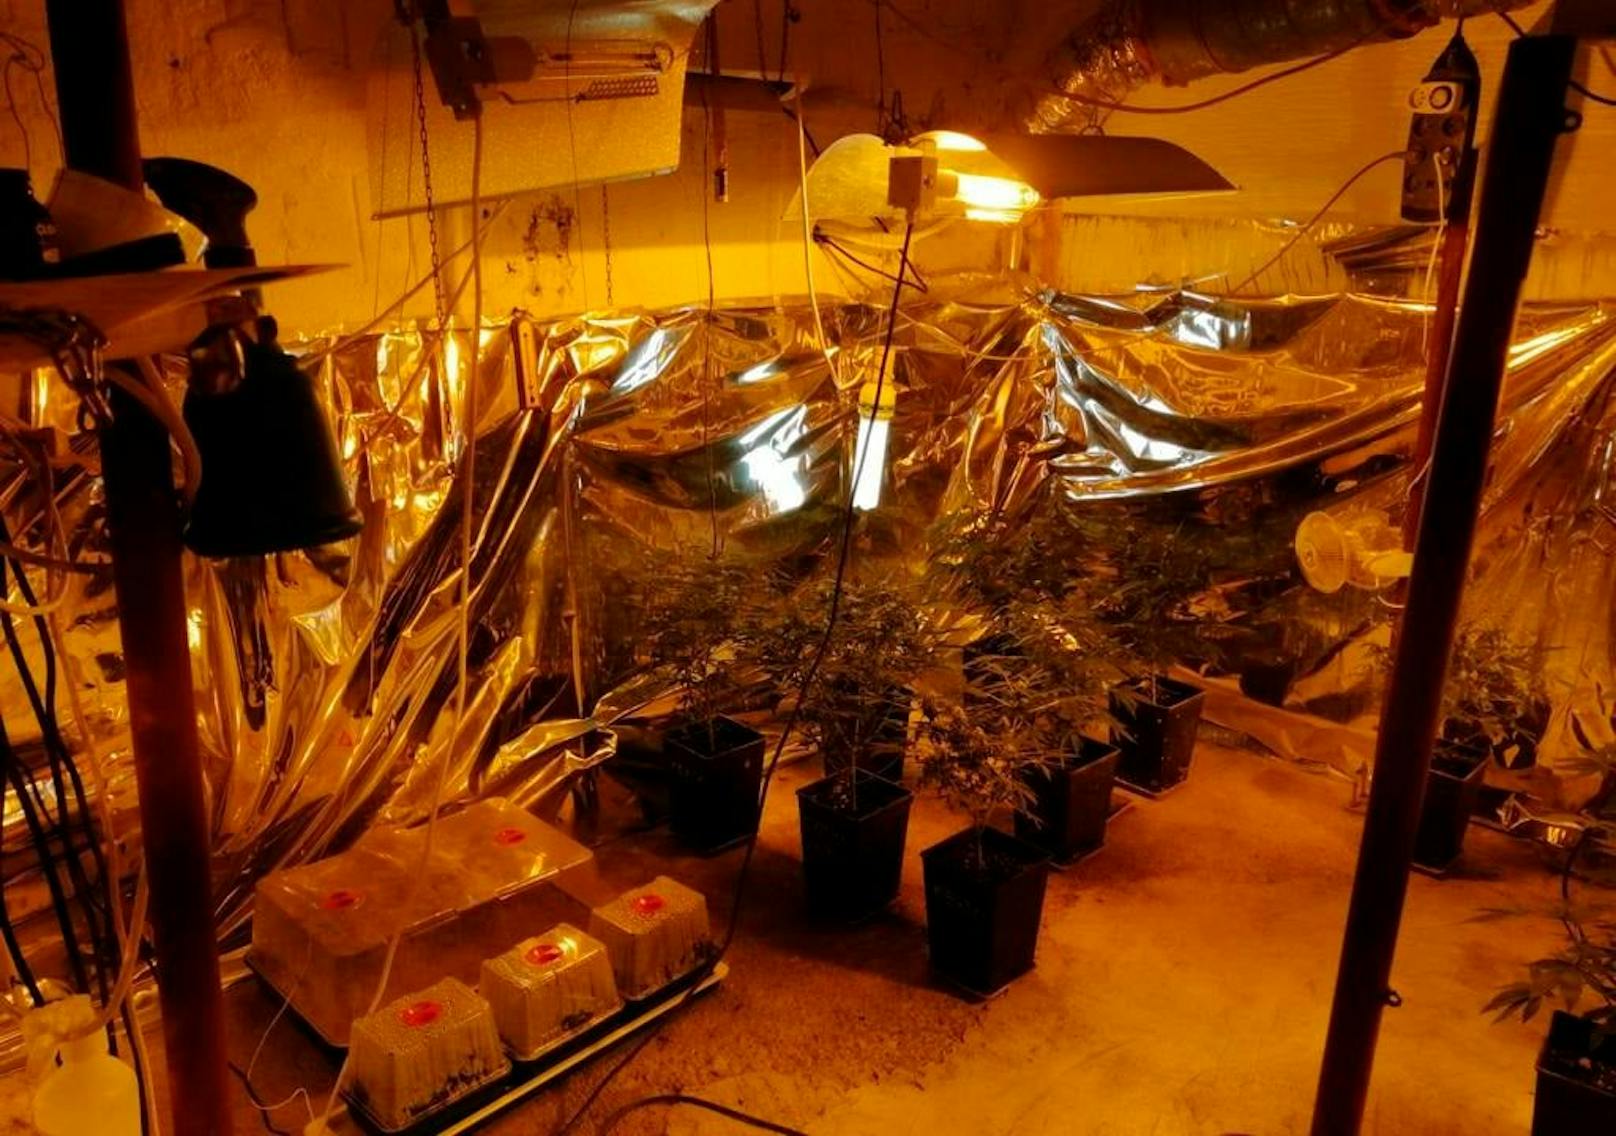 Auch mit Marihuana sollen die beiden gedealt haben. Auf Bildern der slowakischen Nationalpolizei sind Plantagen in Kellern zu sehen.